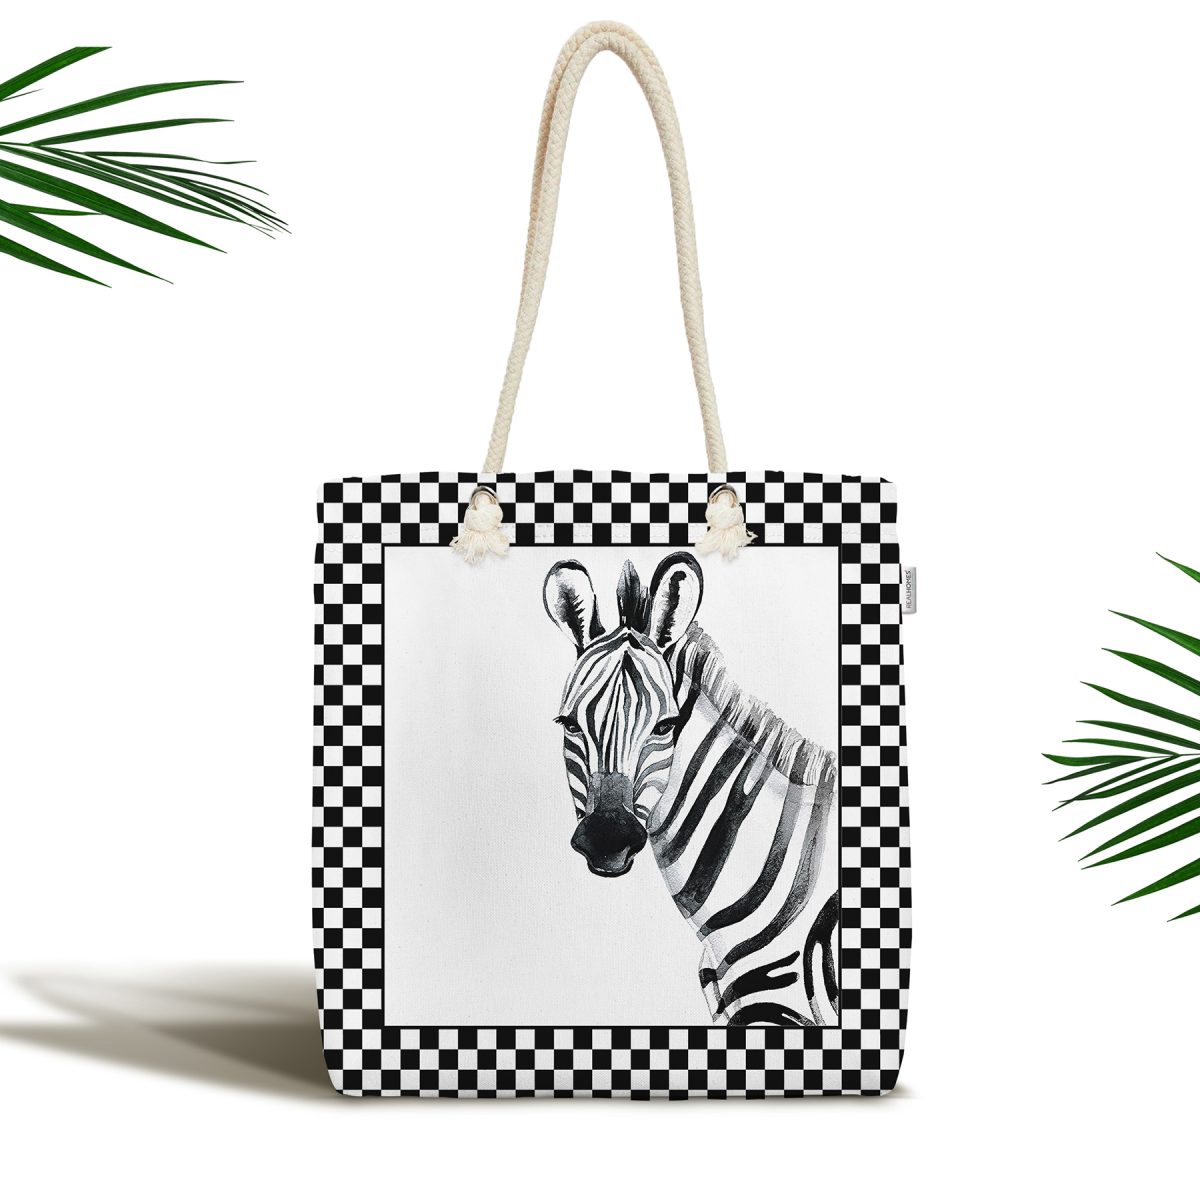 Damalı Çerçeve Motifli Zebra Desenli Dekoratif Fermuarlı Kumaş Omuz Çantası Realhomes